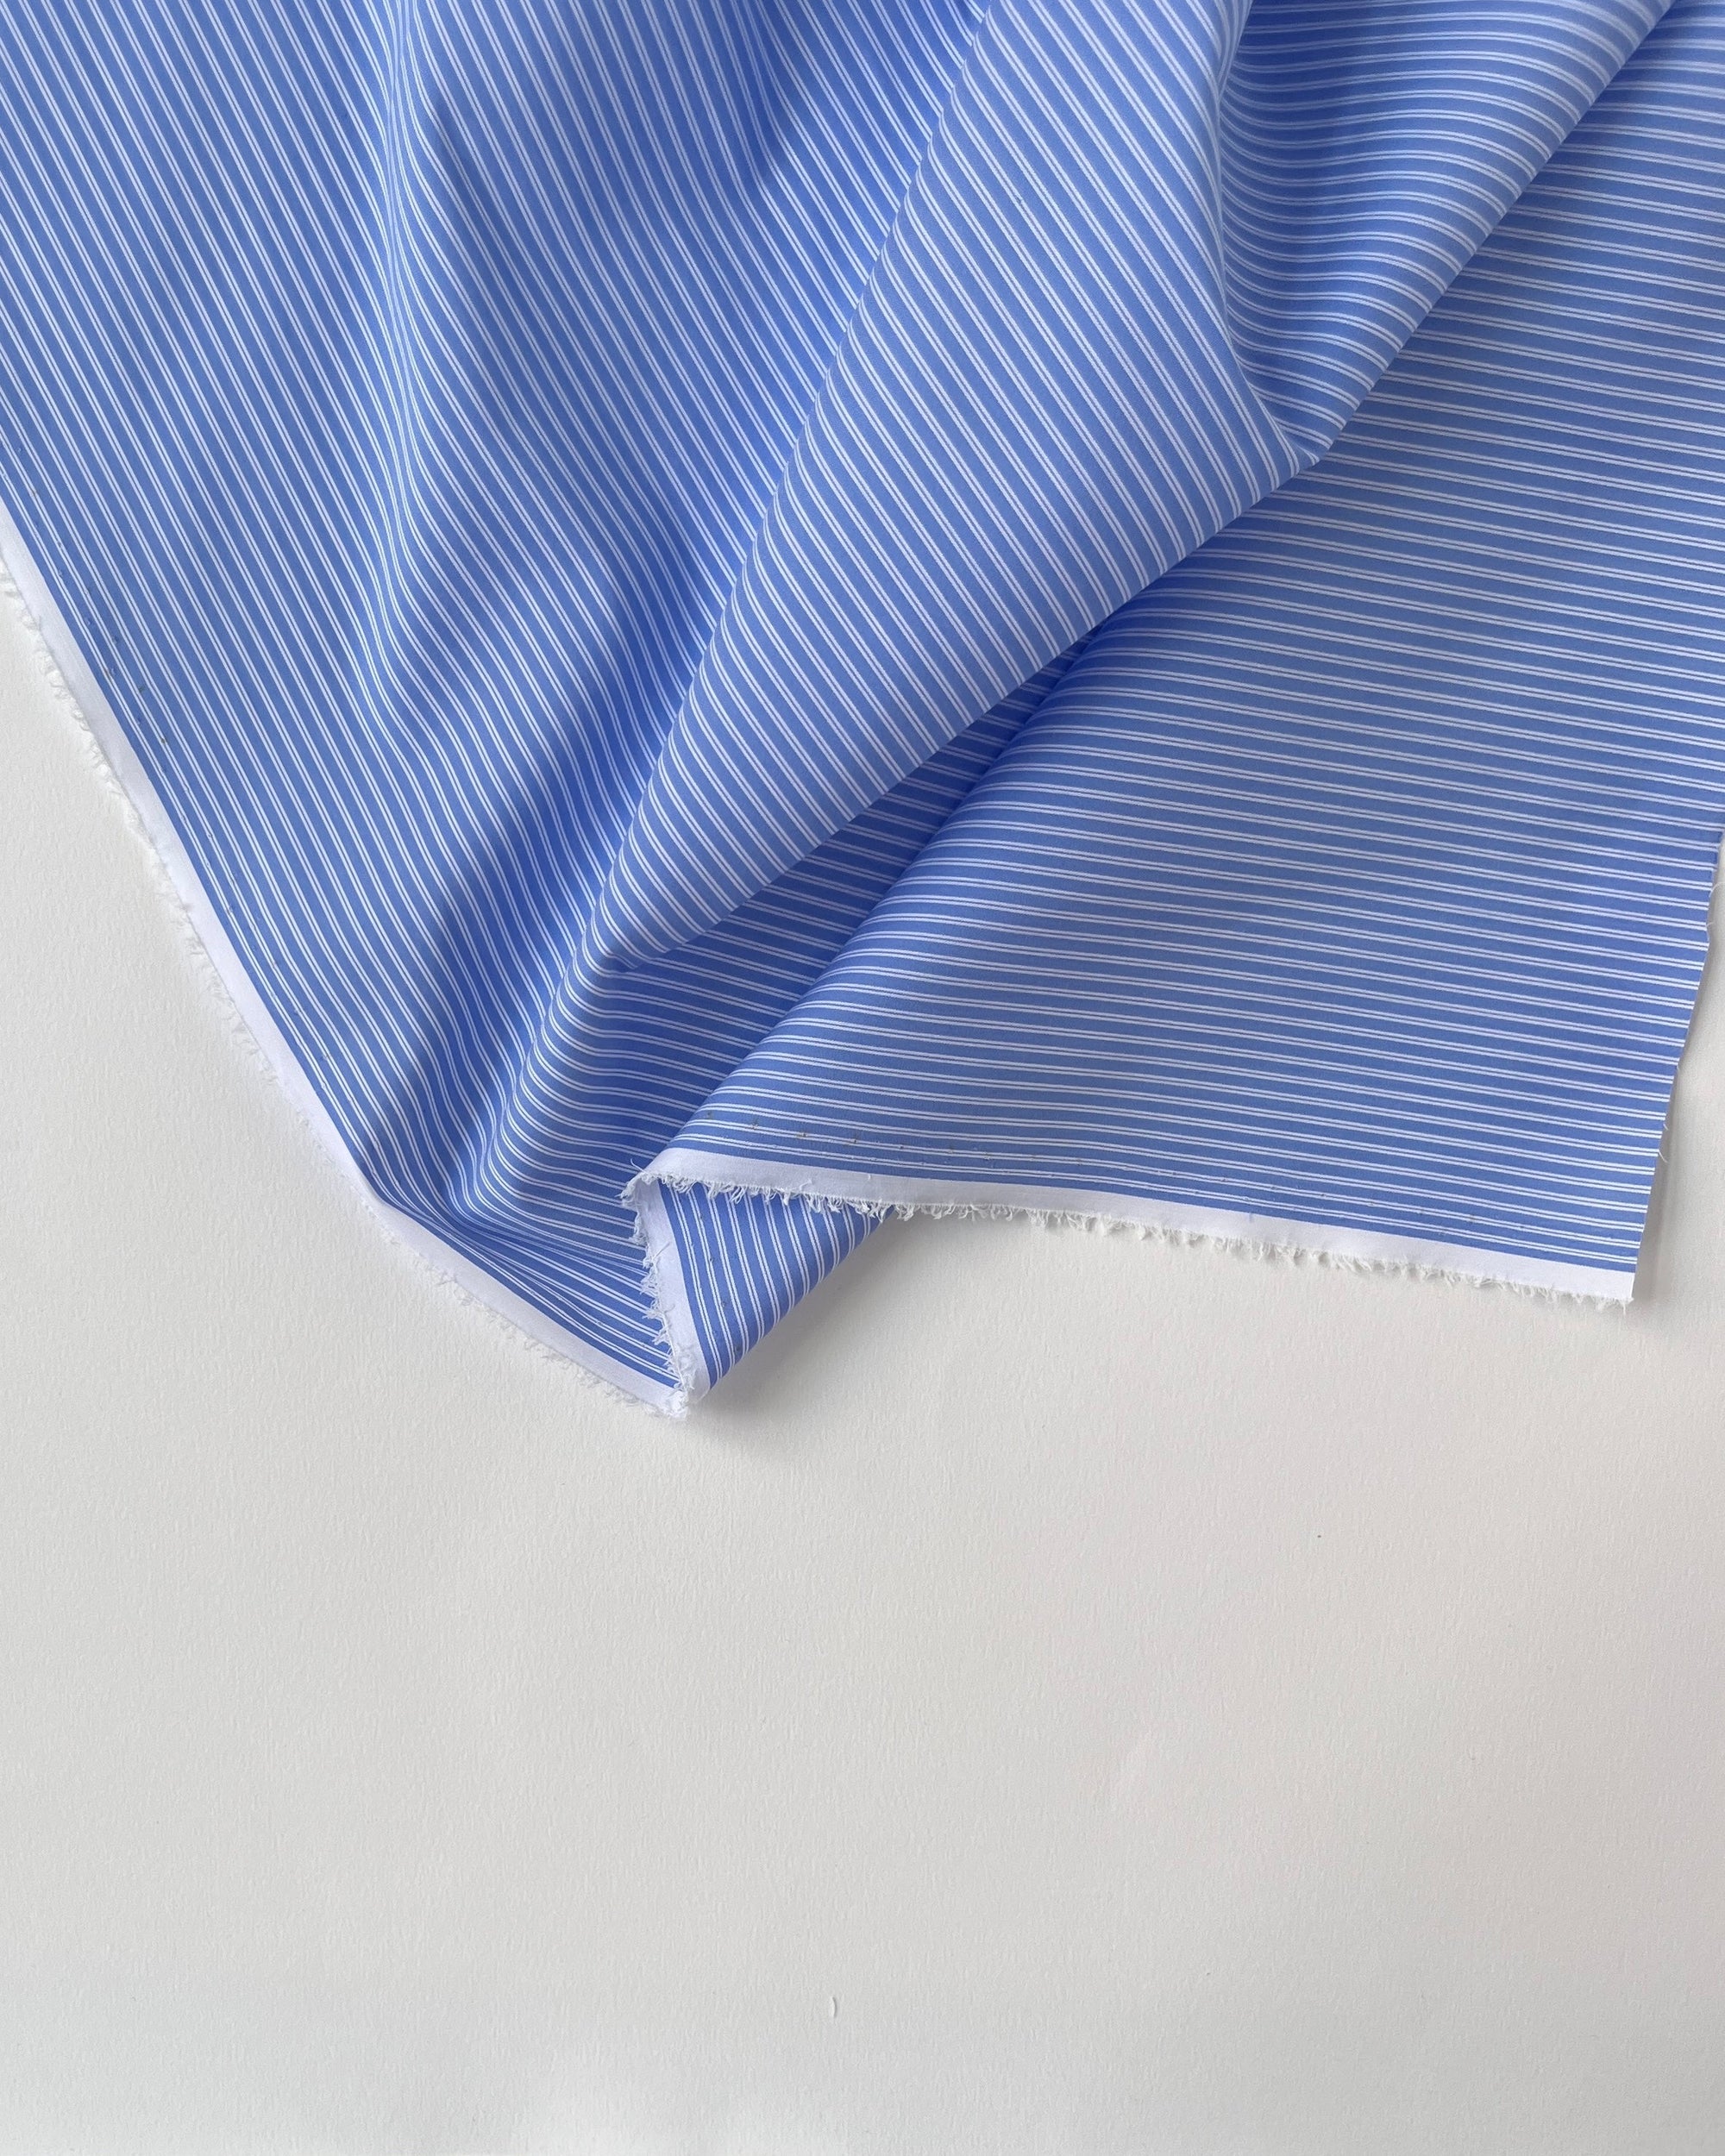 Deadstock Cotton - Shirt Blue Stripes - Remnant 1,4 m.